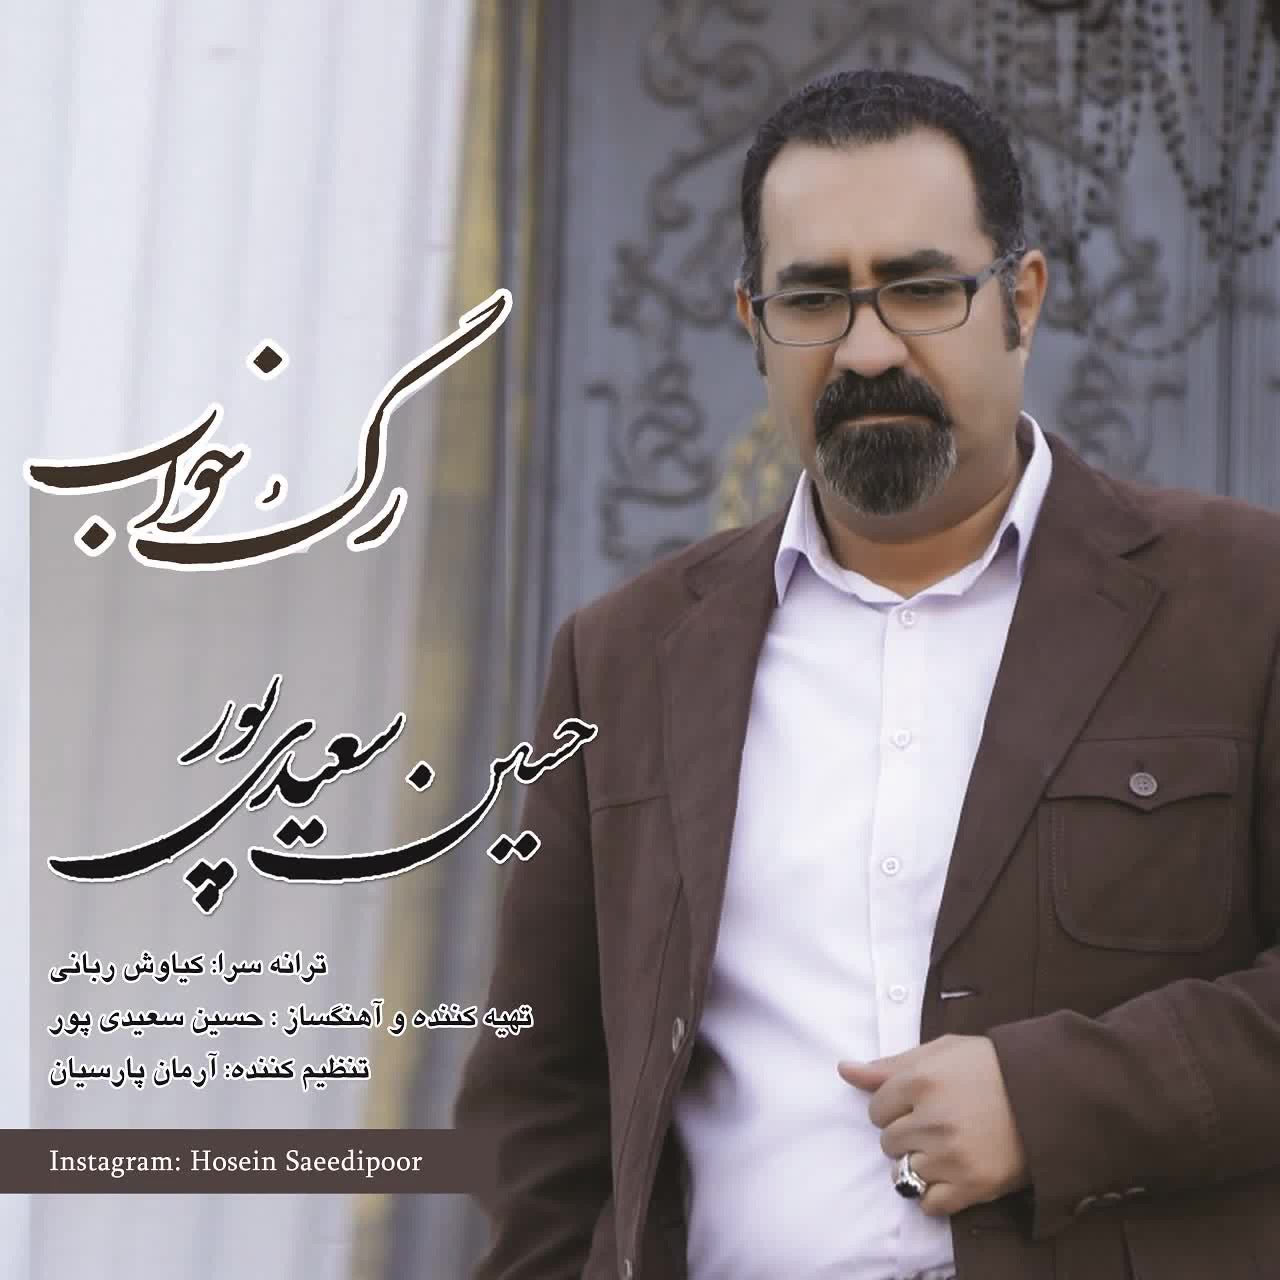 موهات دست باد می افته دنیا رگ خوابم رو می دونه + حسین سعیدی پور - رگ خواب